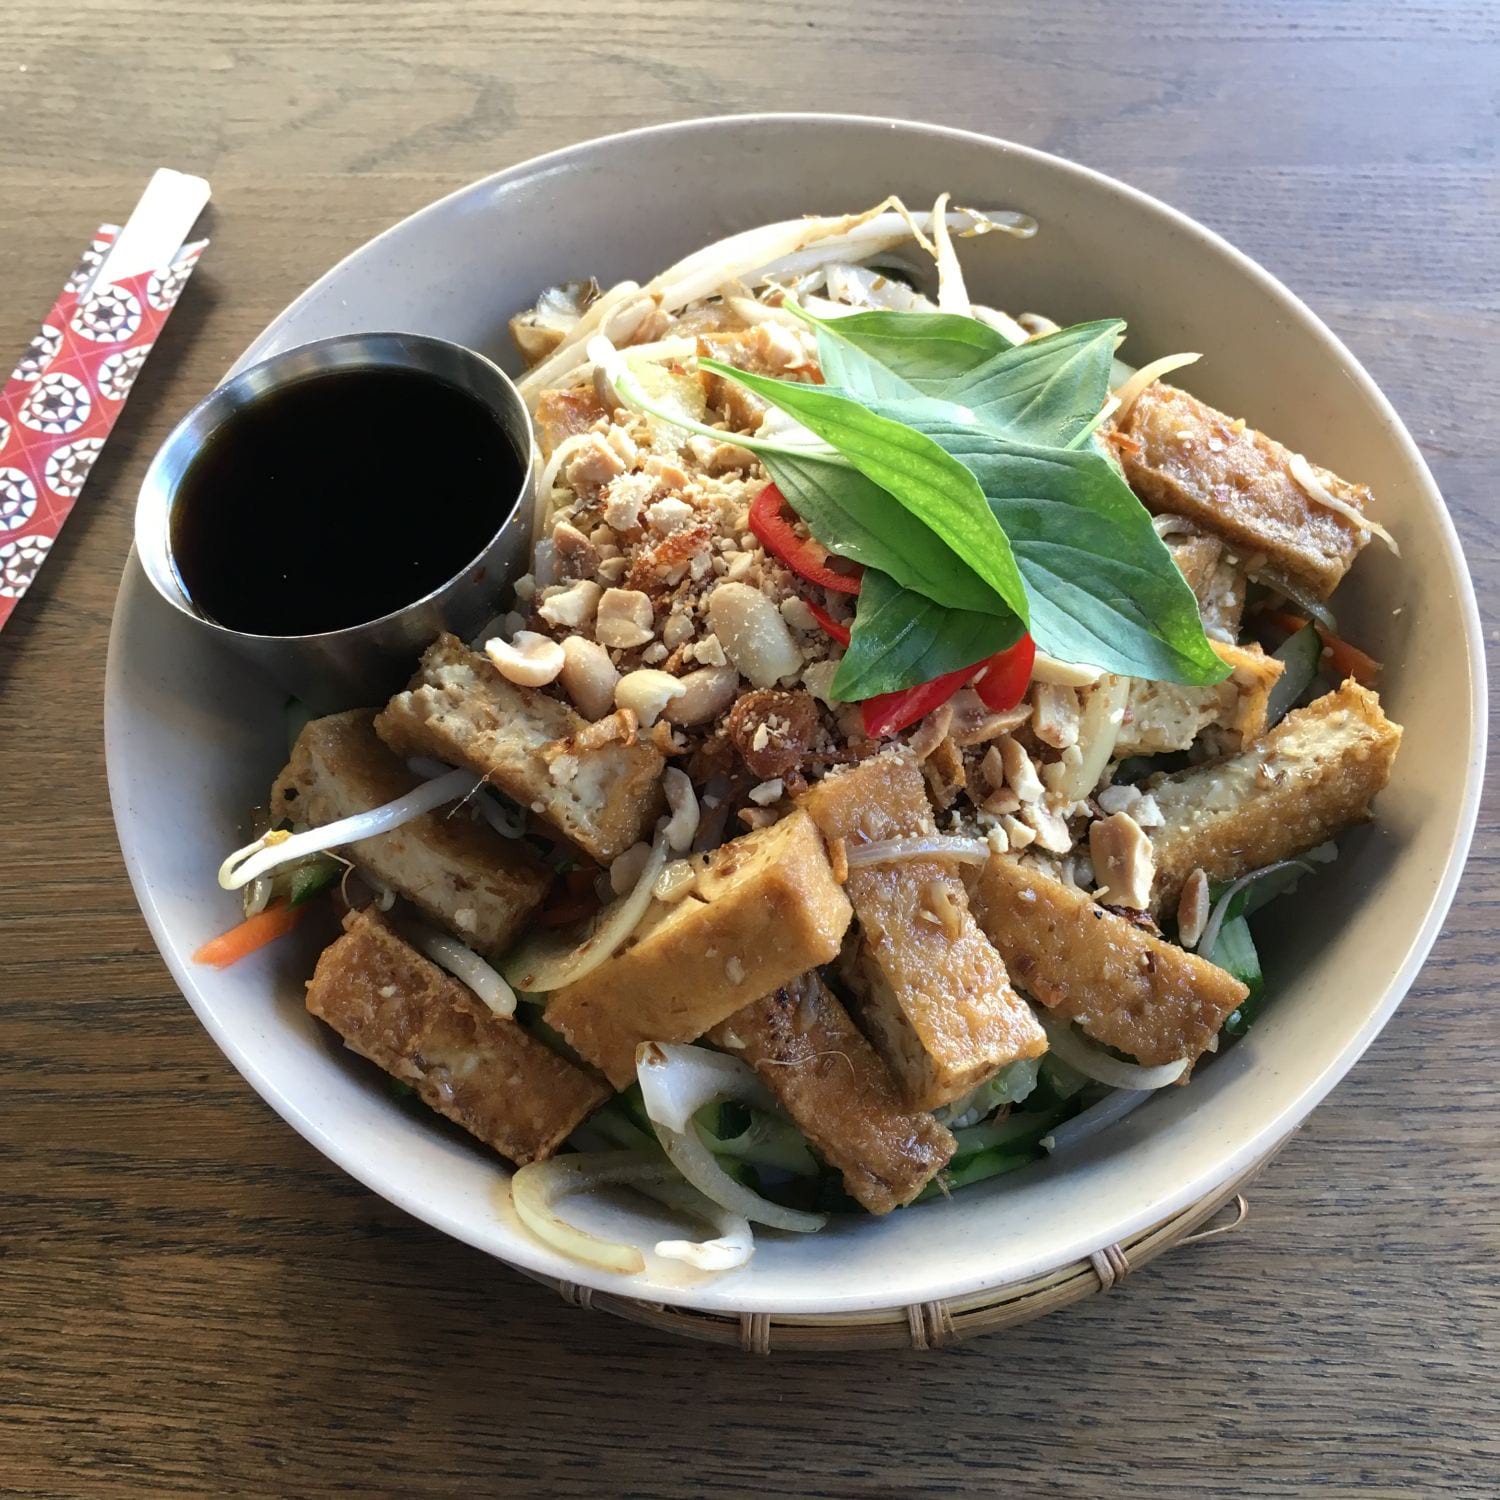 Nudelsallad med tofu – Bild från Eatnam Odengatan av Sophie E. (2018-10-17)